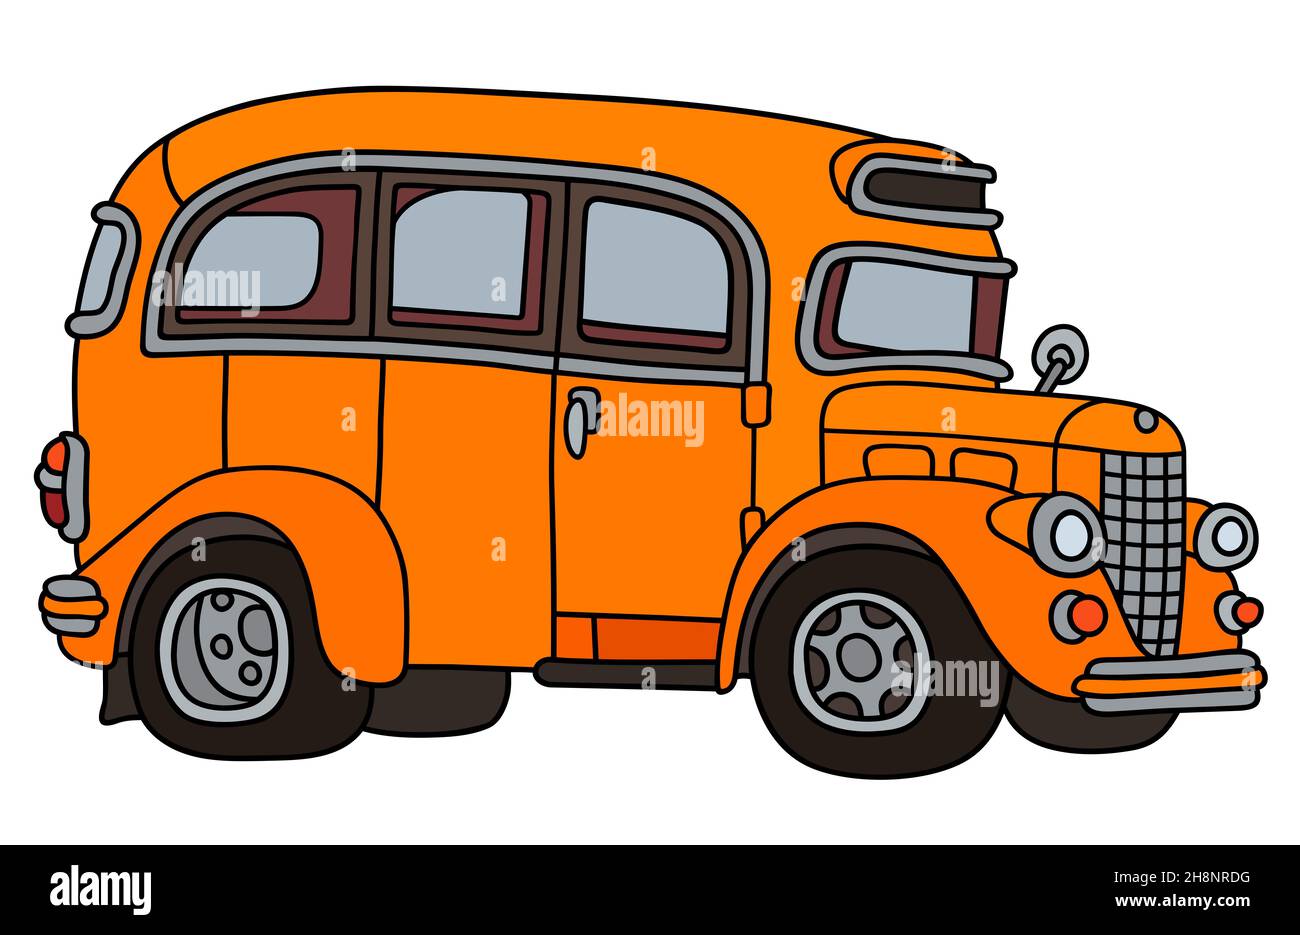 Handzeichnung eines alten orangefarbenen Busses Stockfoto